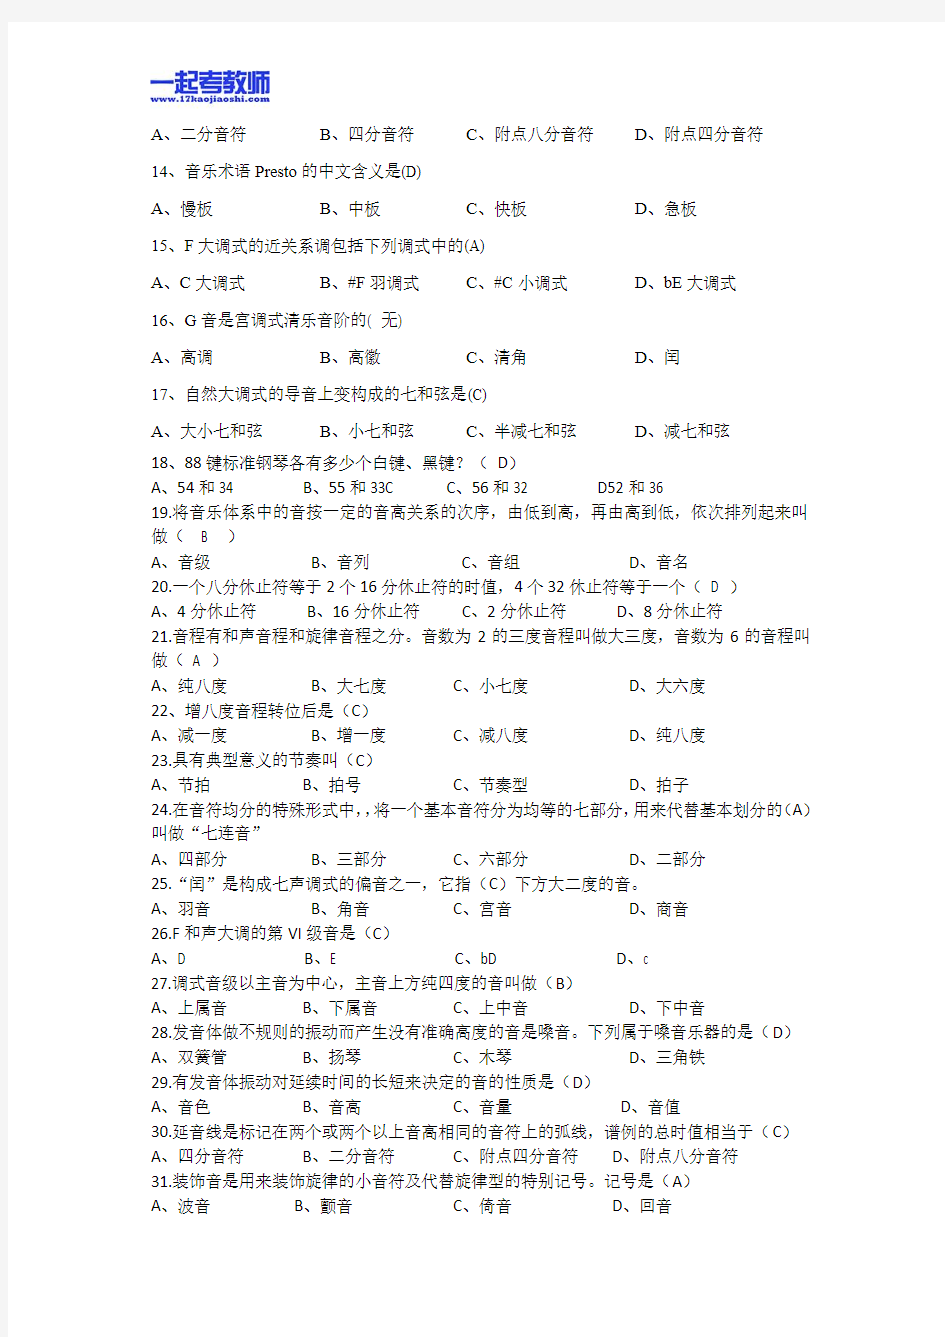 2013年江西省教师招聘考试笔试音乐小学学段真题答案解析